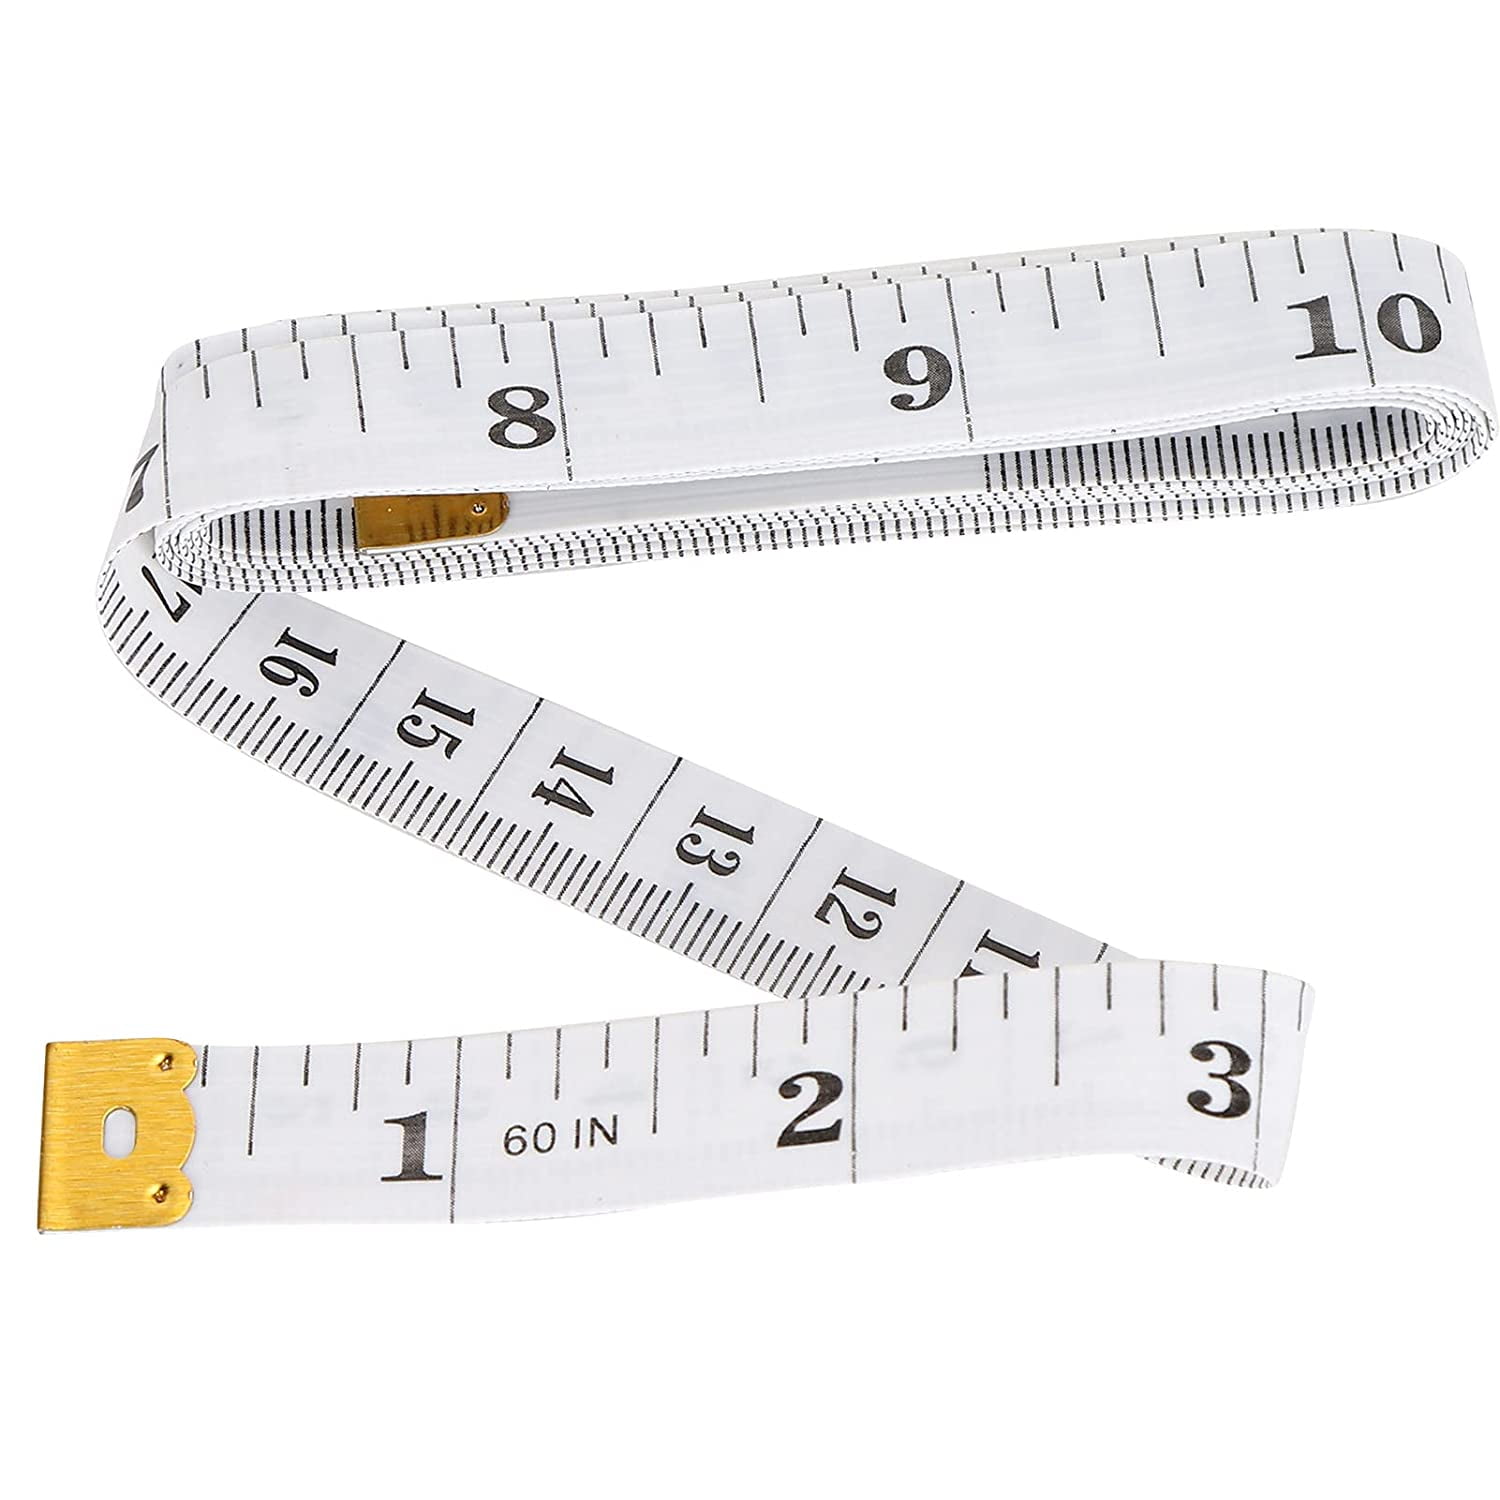 seamstress measuring tape - Google Search